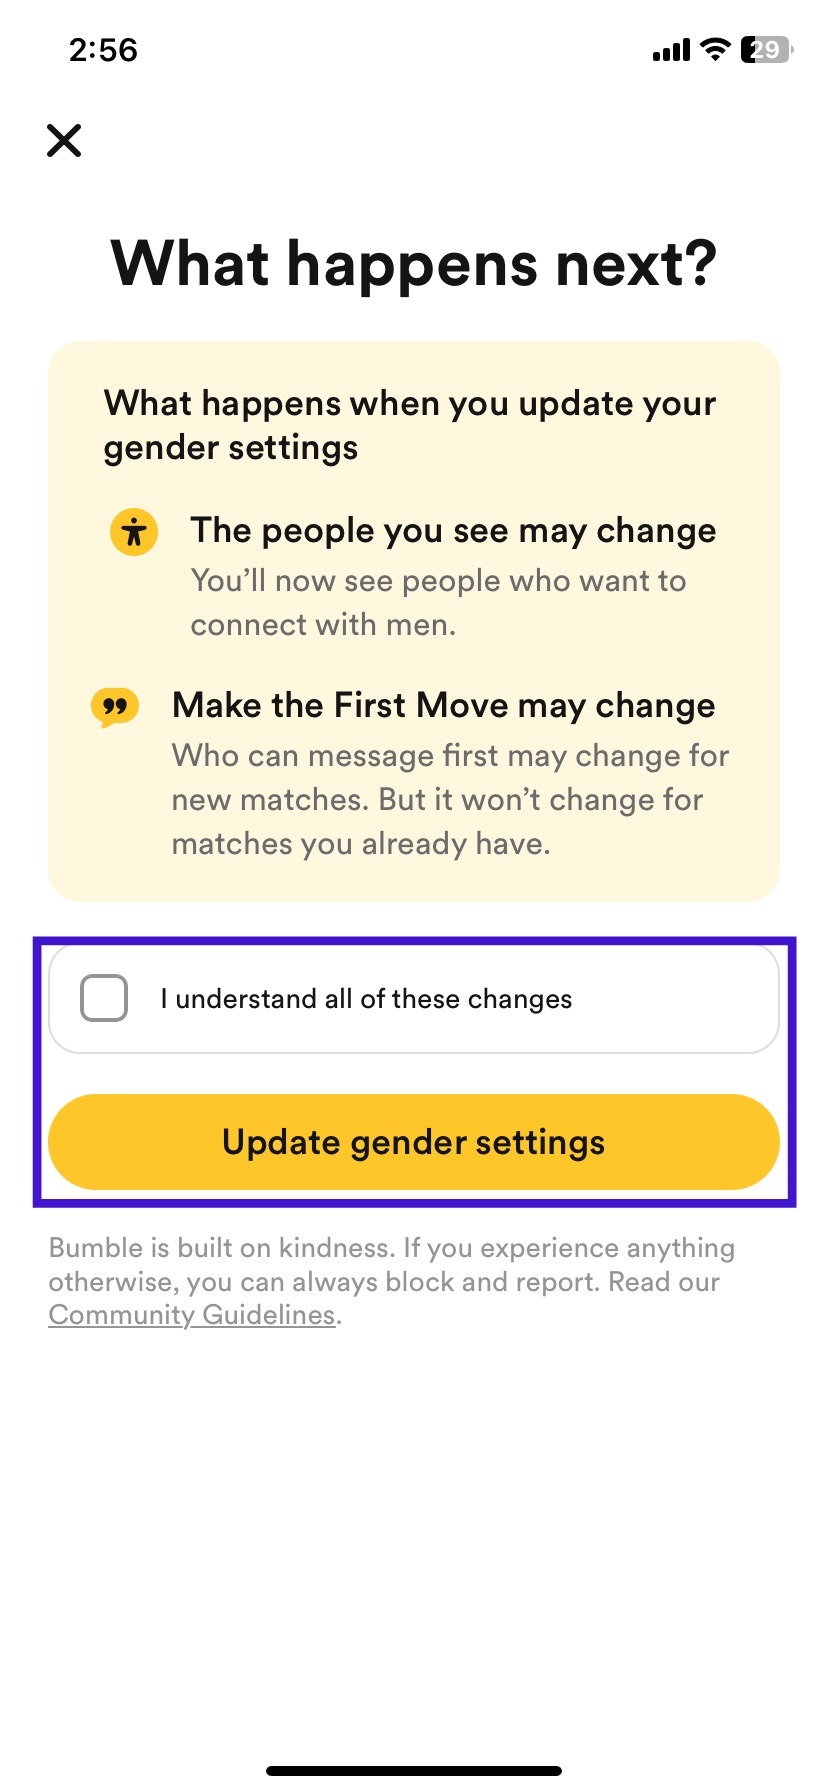 select update gender settings